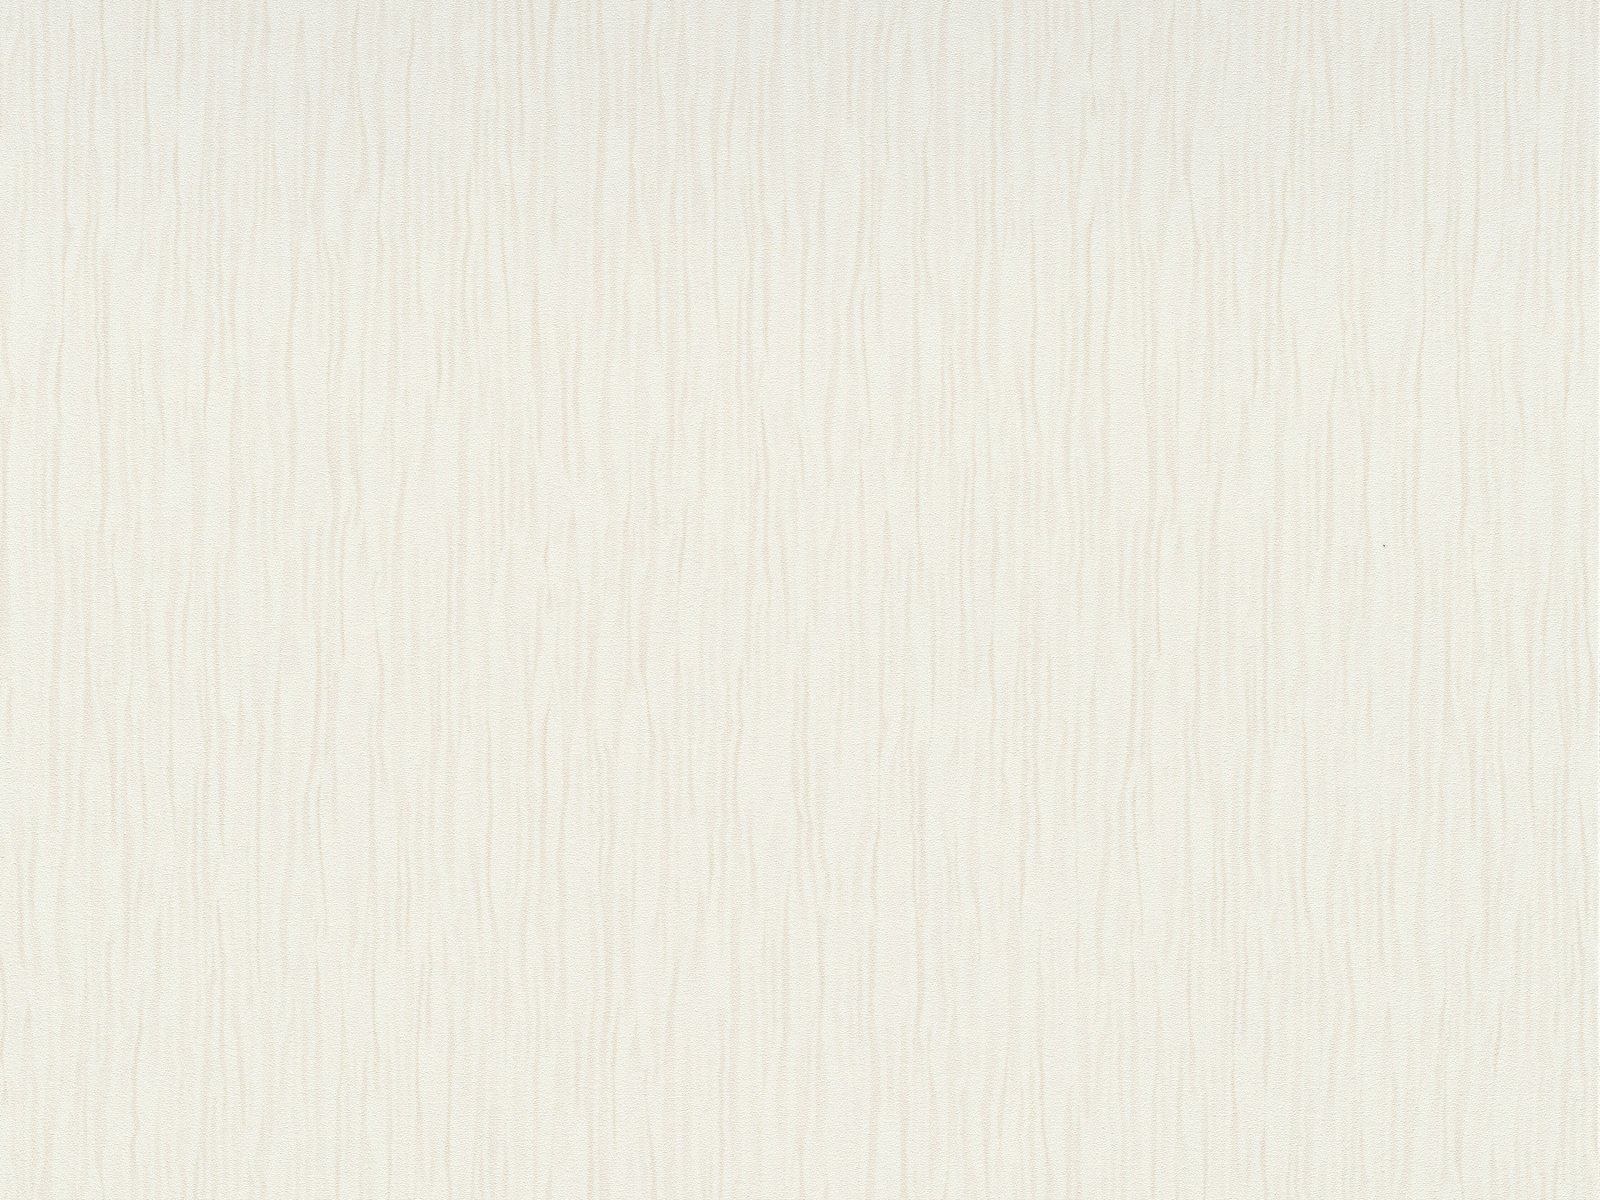 Vliesová tapeta vlnovkovitá s dekoratívnou textúrou s moaré efektom v krémovej farbe, ER-601817